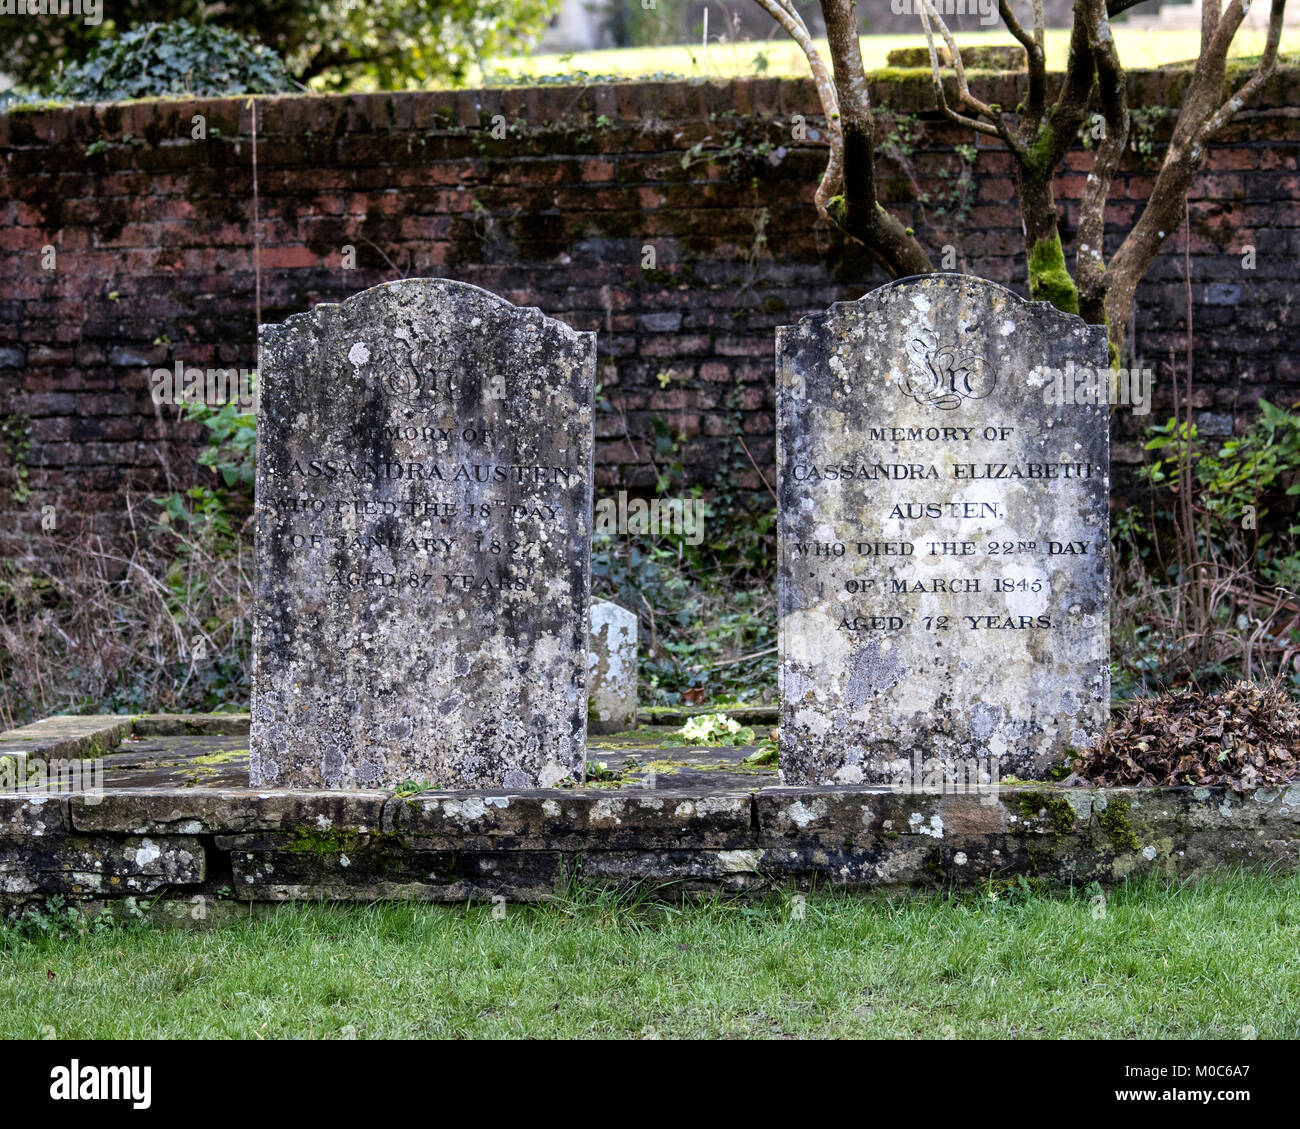 Die Gräber von Cassandra Elizabeth Austen (ältere Schwester von Jane Austen) und Cassandra Austen (geborene Leigh) Mutter von Jane Austen in Chawton Hampshire Stockfoto